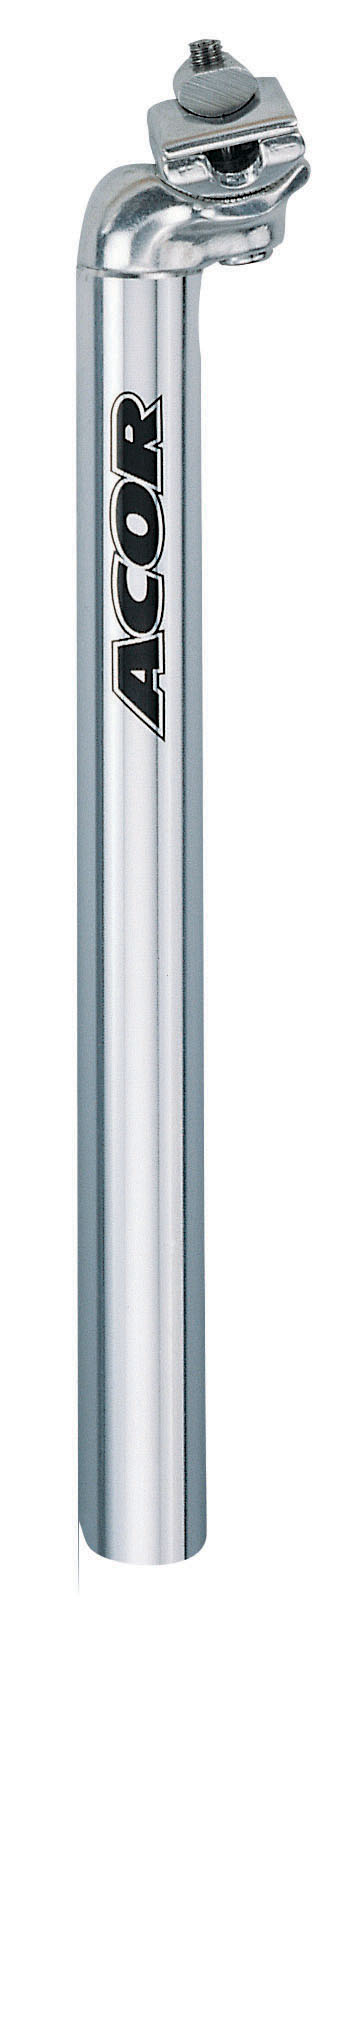 Acor ASP-2001 nyeregcső [ezüst, 27.0 mm]